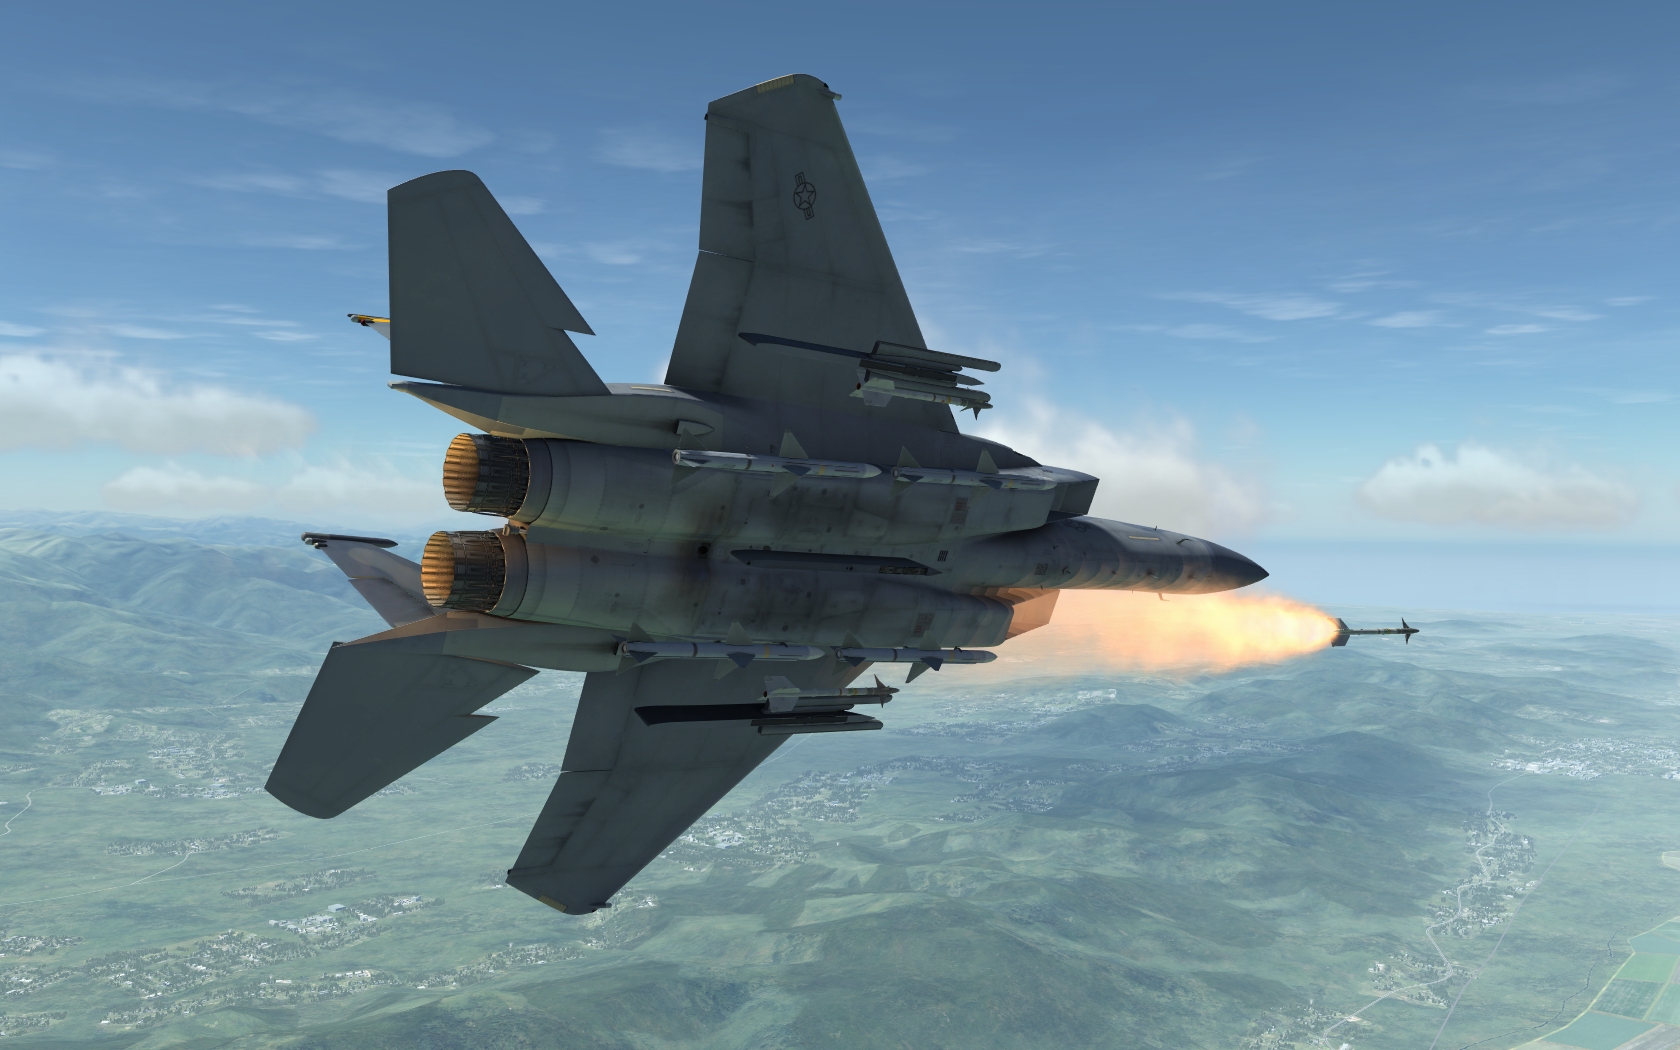 DCS WORLD游戏截图 苏27对战F15-3342 